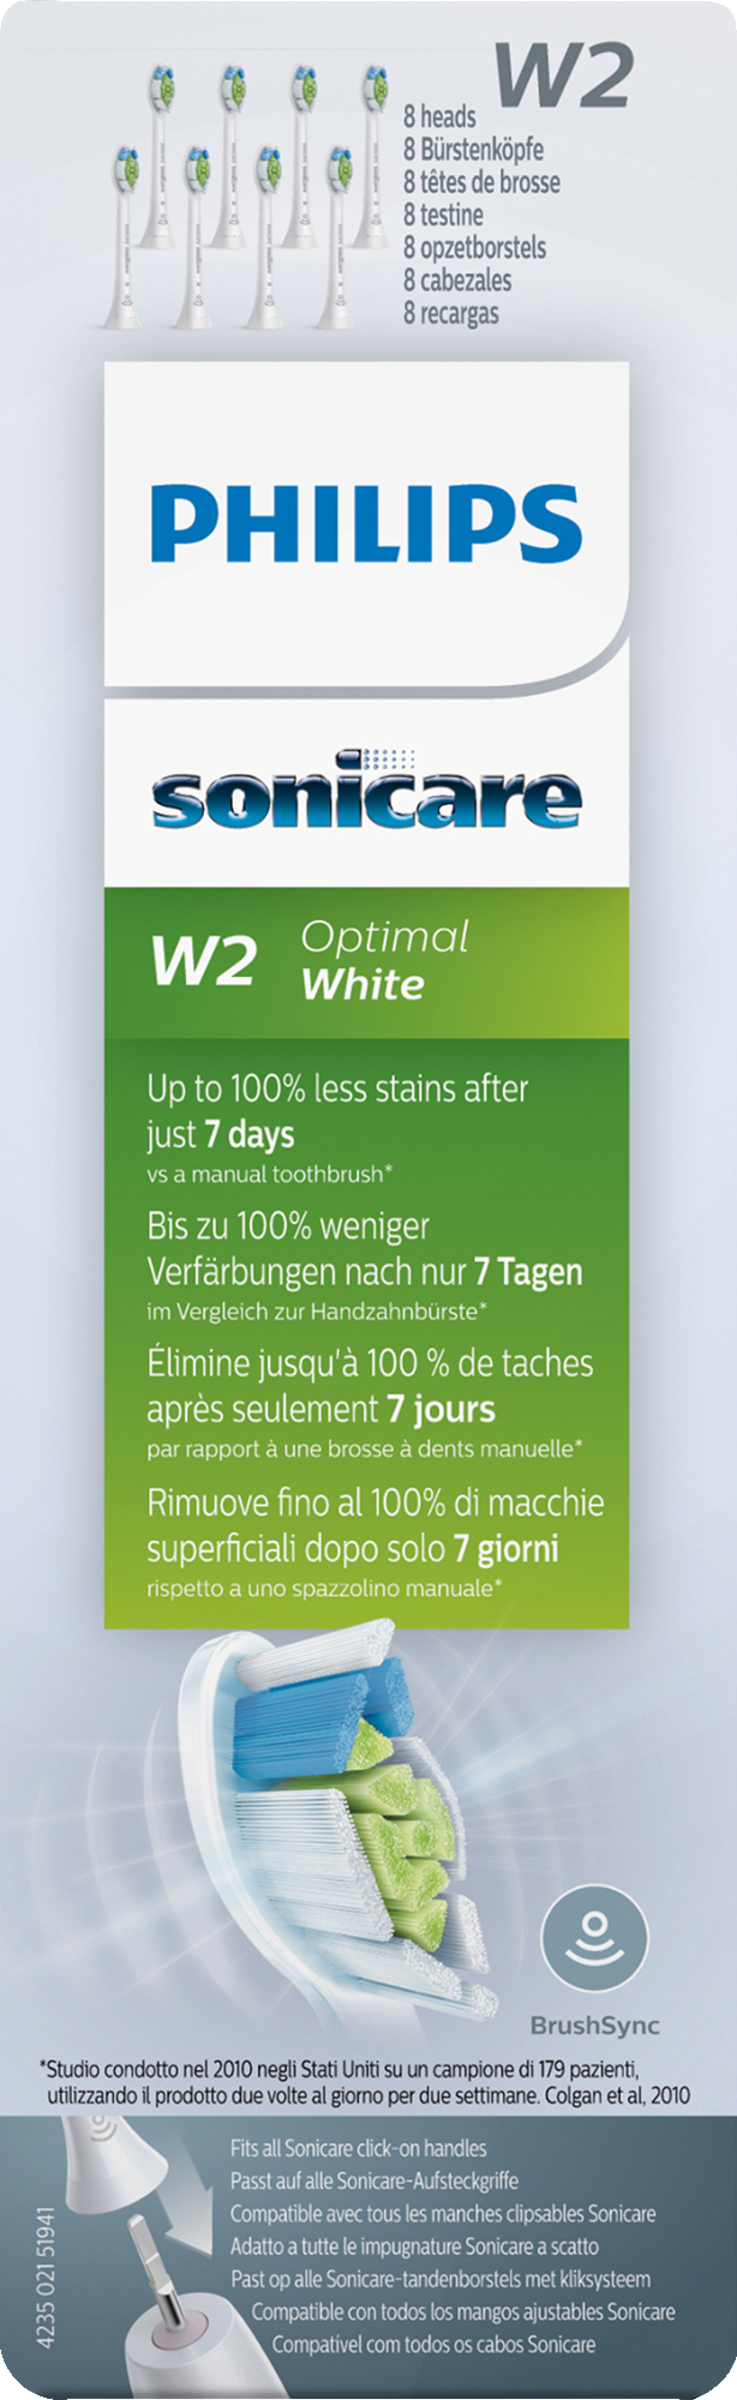 Philips Sonicare W2 Optimal Weiß Zahnbürste Köpfe HX6068 8 Pack